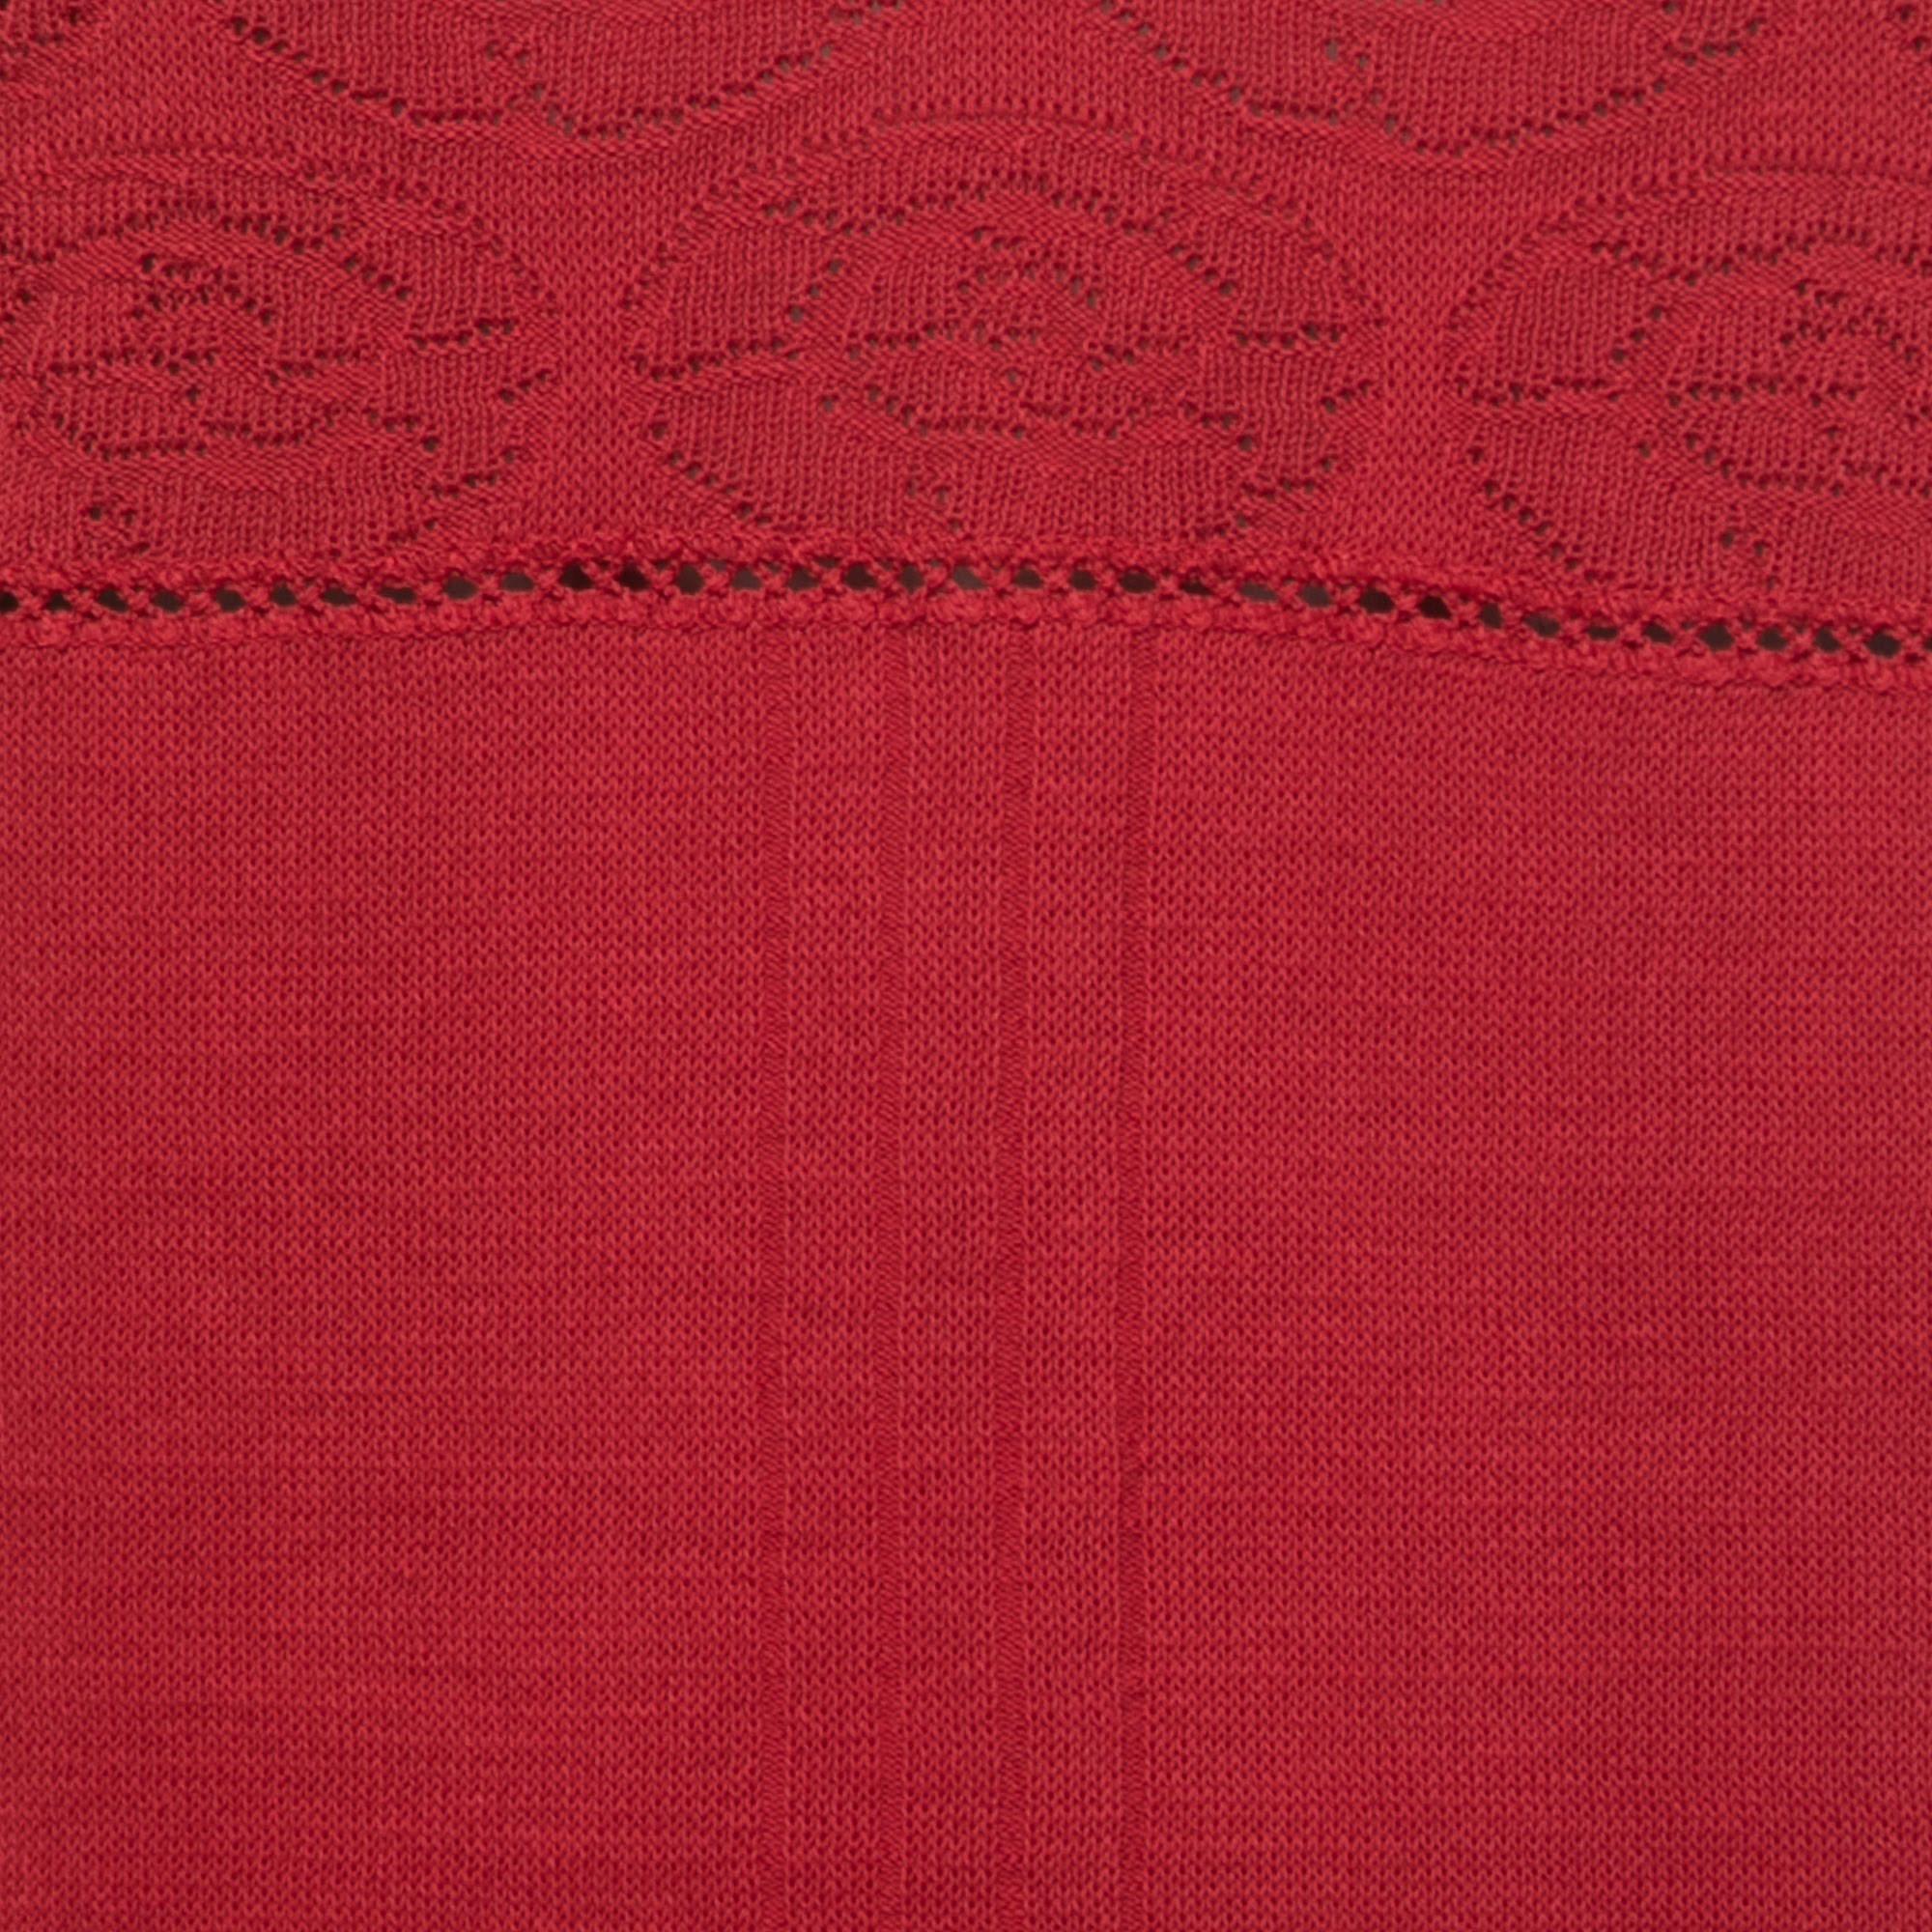 Chanel Burgundy Cotton Knit Camisole L In Good Condition For Sale In Dubai, Al Qouz 2